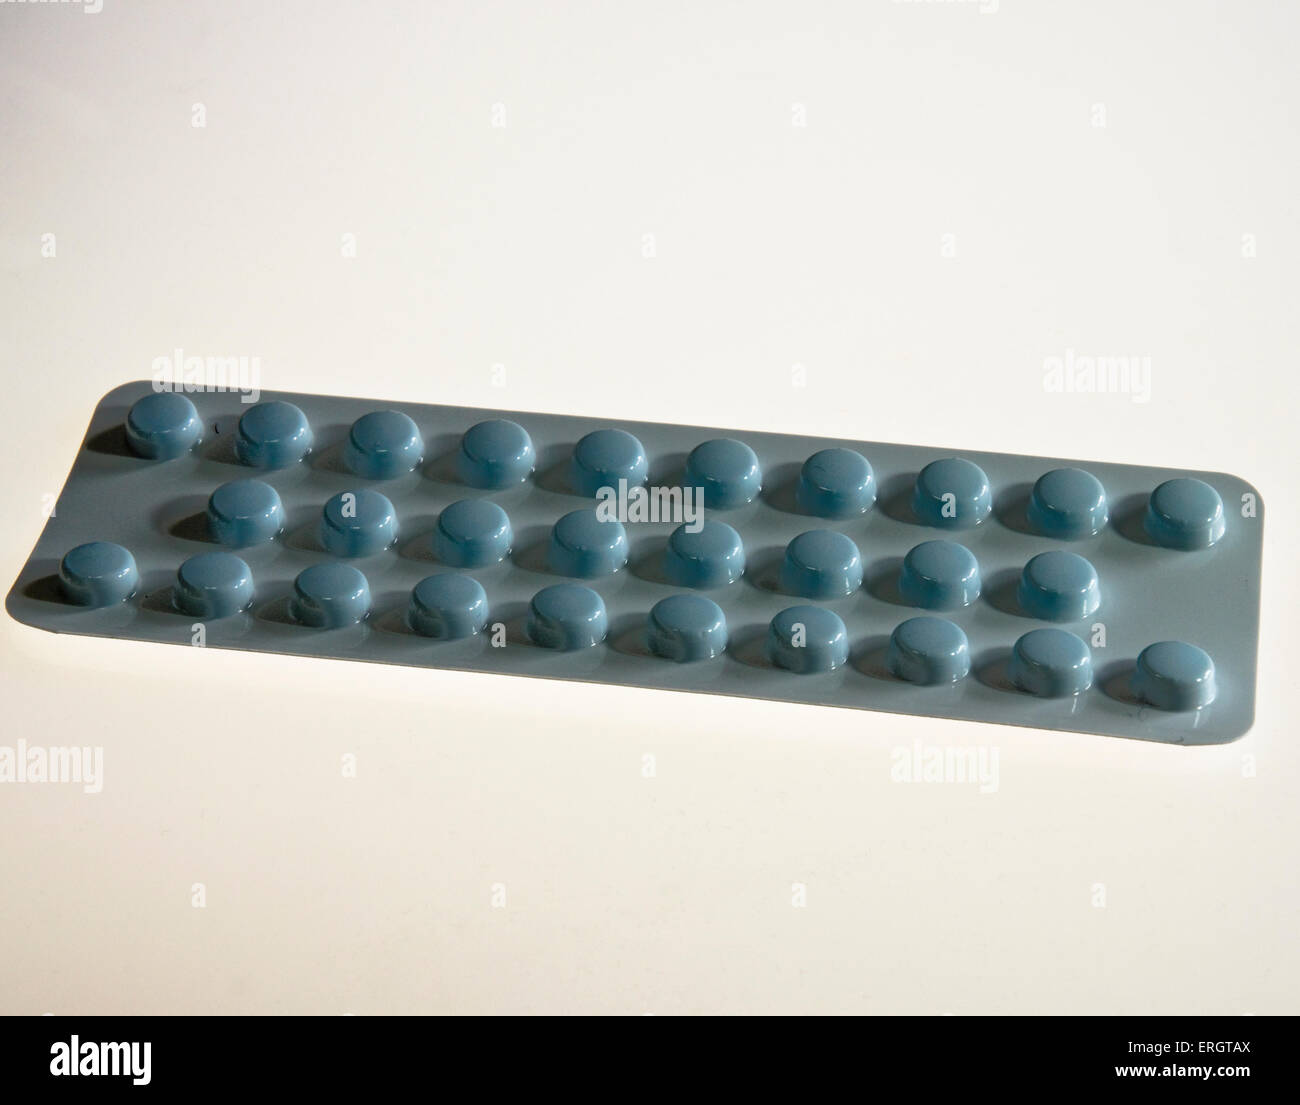 Amitriptylin 10mg Tabletten Medikamente gegen Rückenschmerzen  Stockfotografie - Alamy